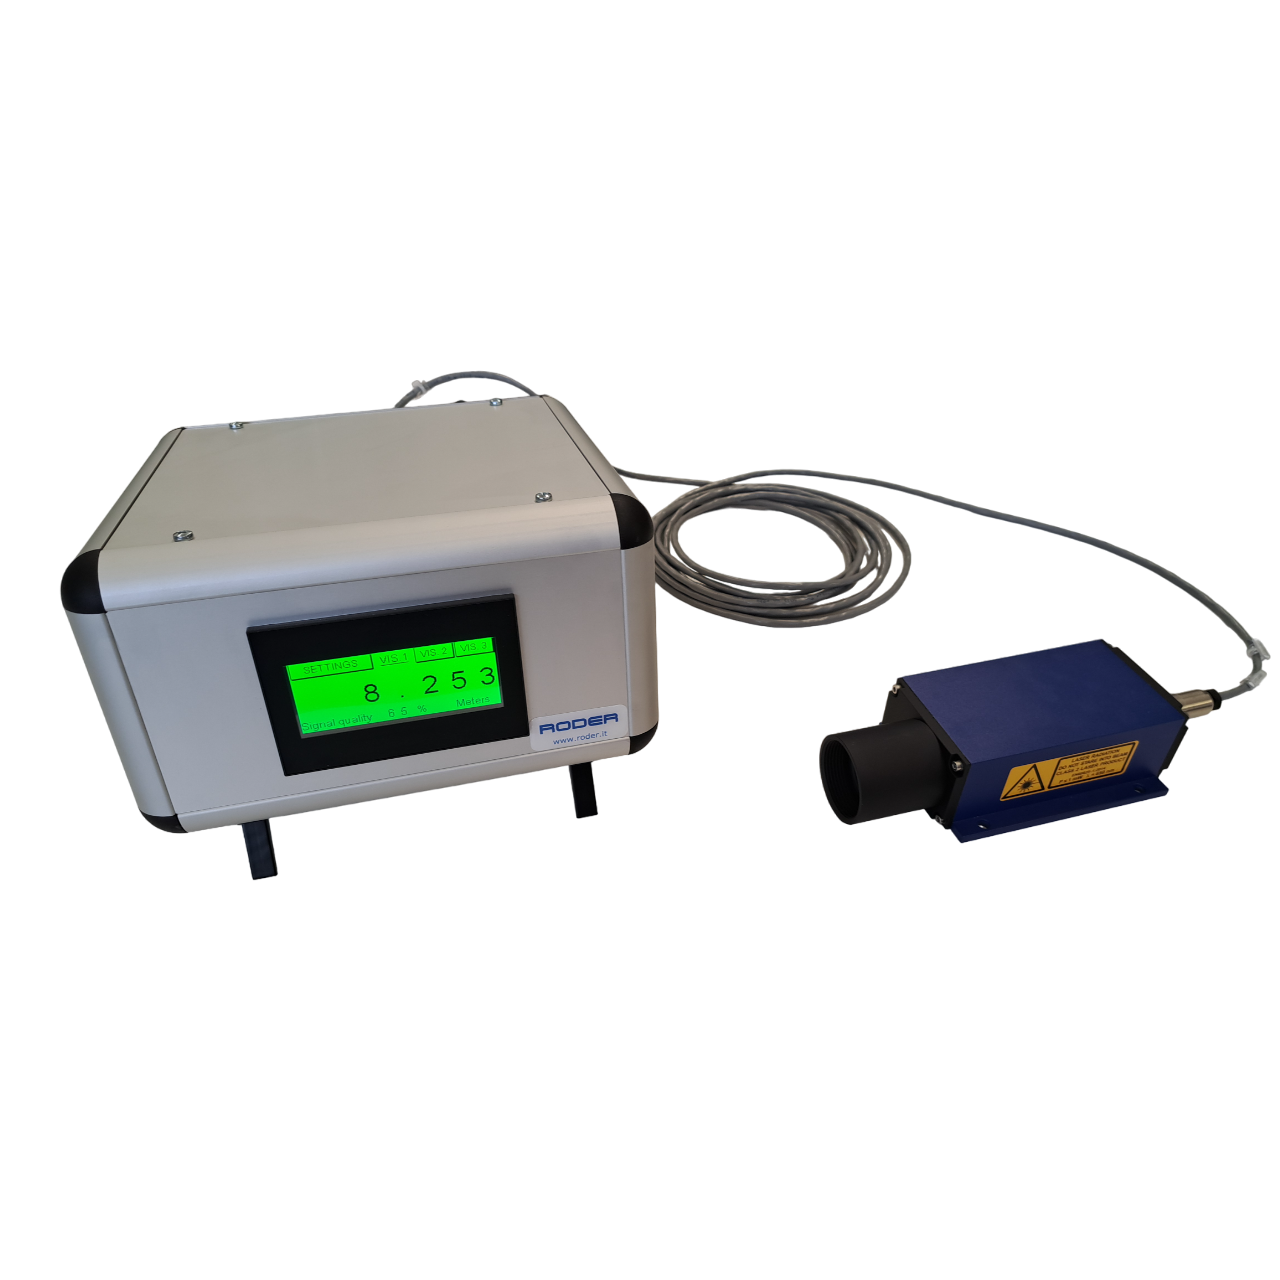 Applicatiekit voor laserafstandsmeters voor het meten van afstand, verplaatsing en vervorming